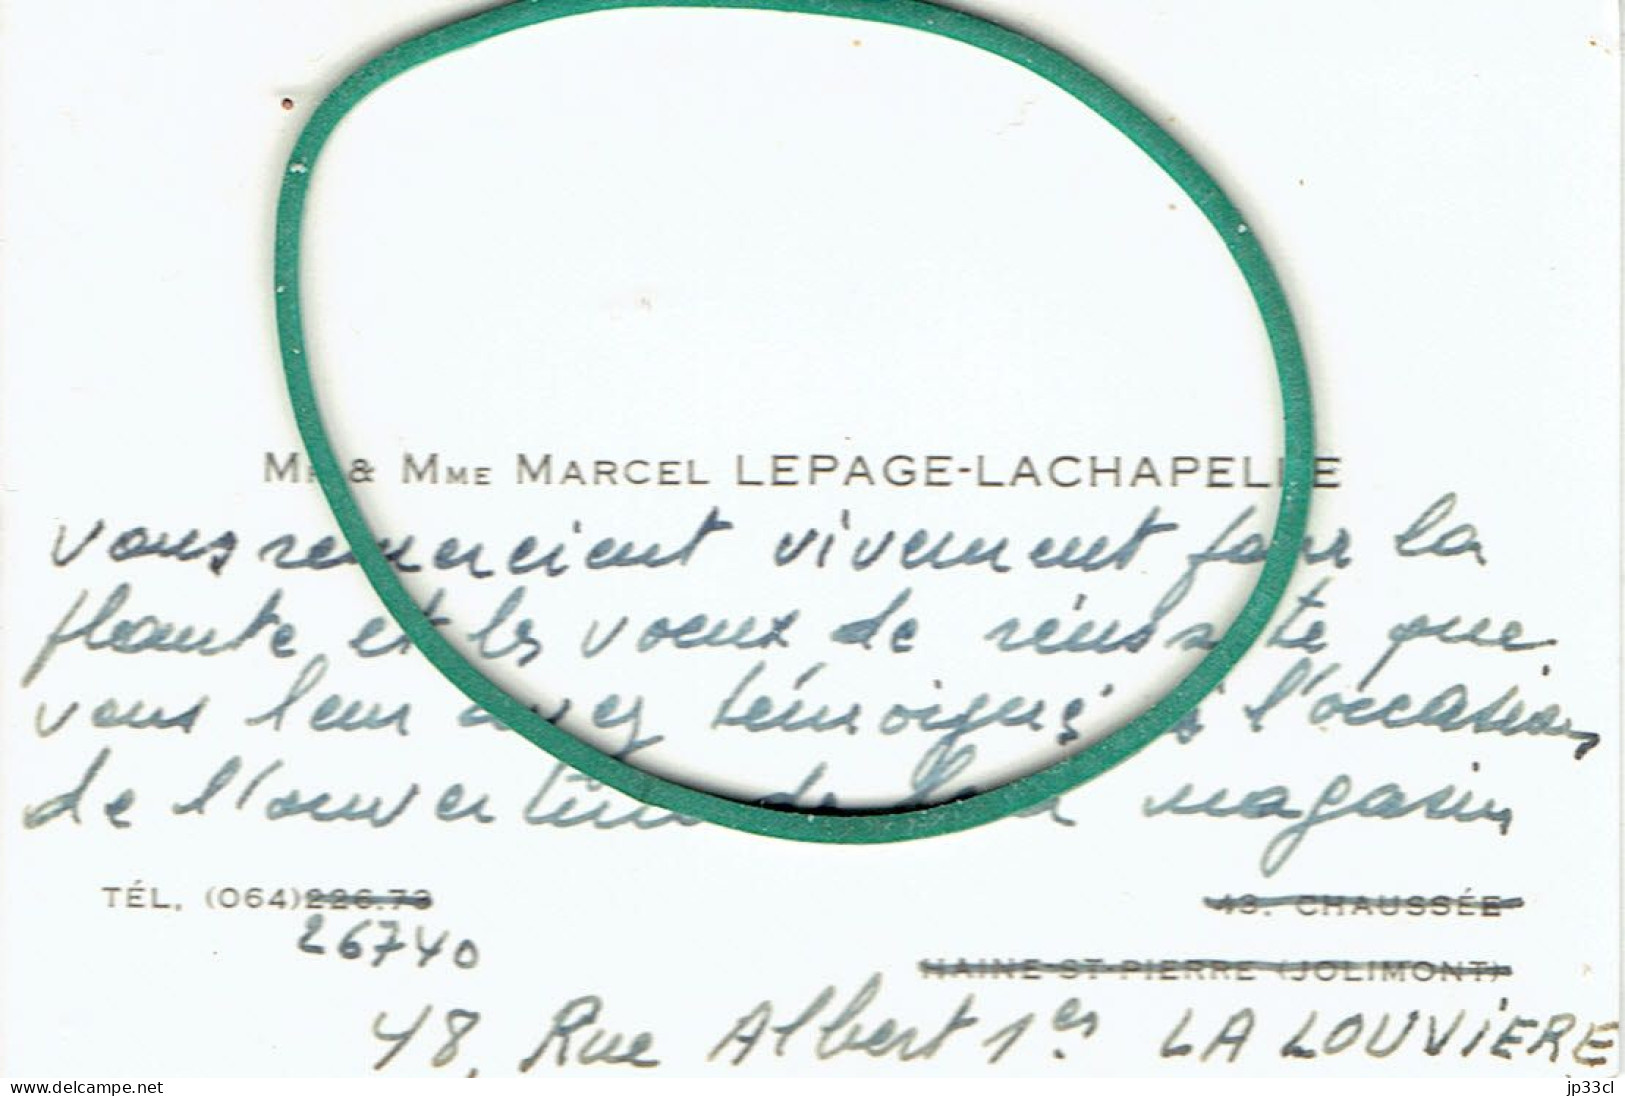 Les Remerciements De M. Marcel Lepage à L'occasion De L'ouverture De Son Magasin "Bernina" à La Louvière (vers 1965) - Visiting Cards